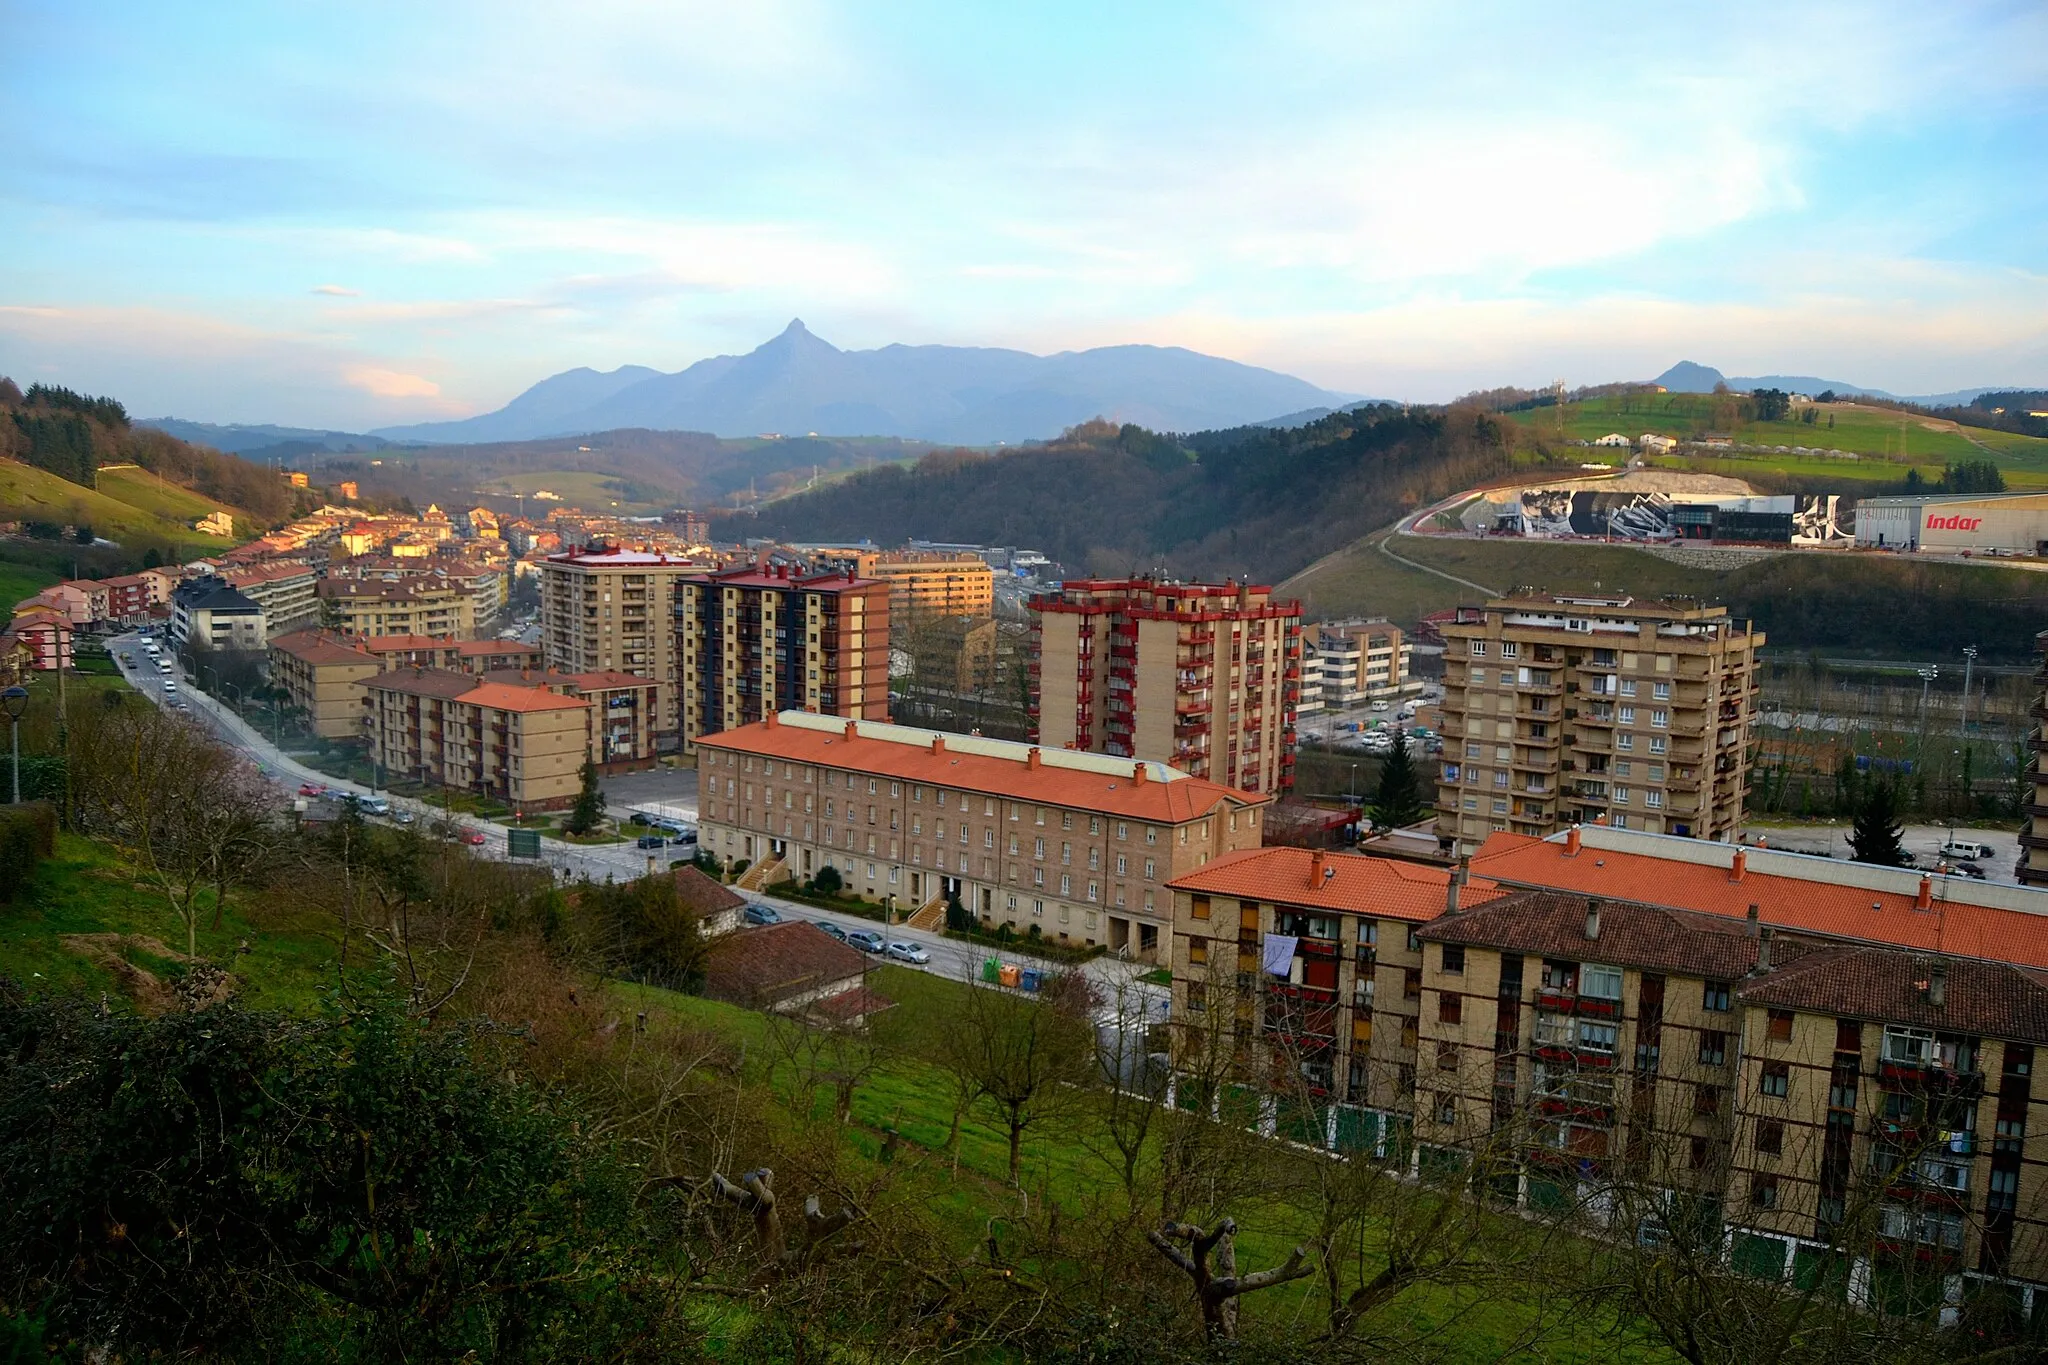 Immagine di Paese Basco